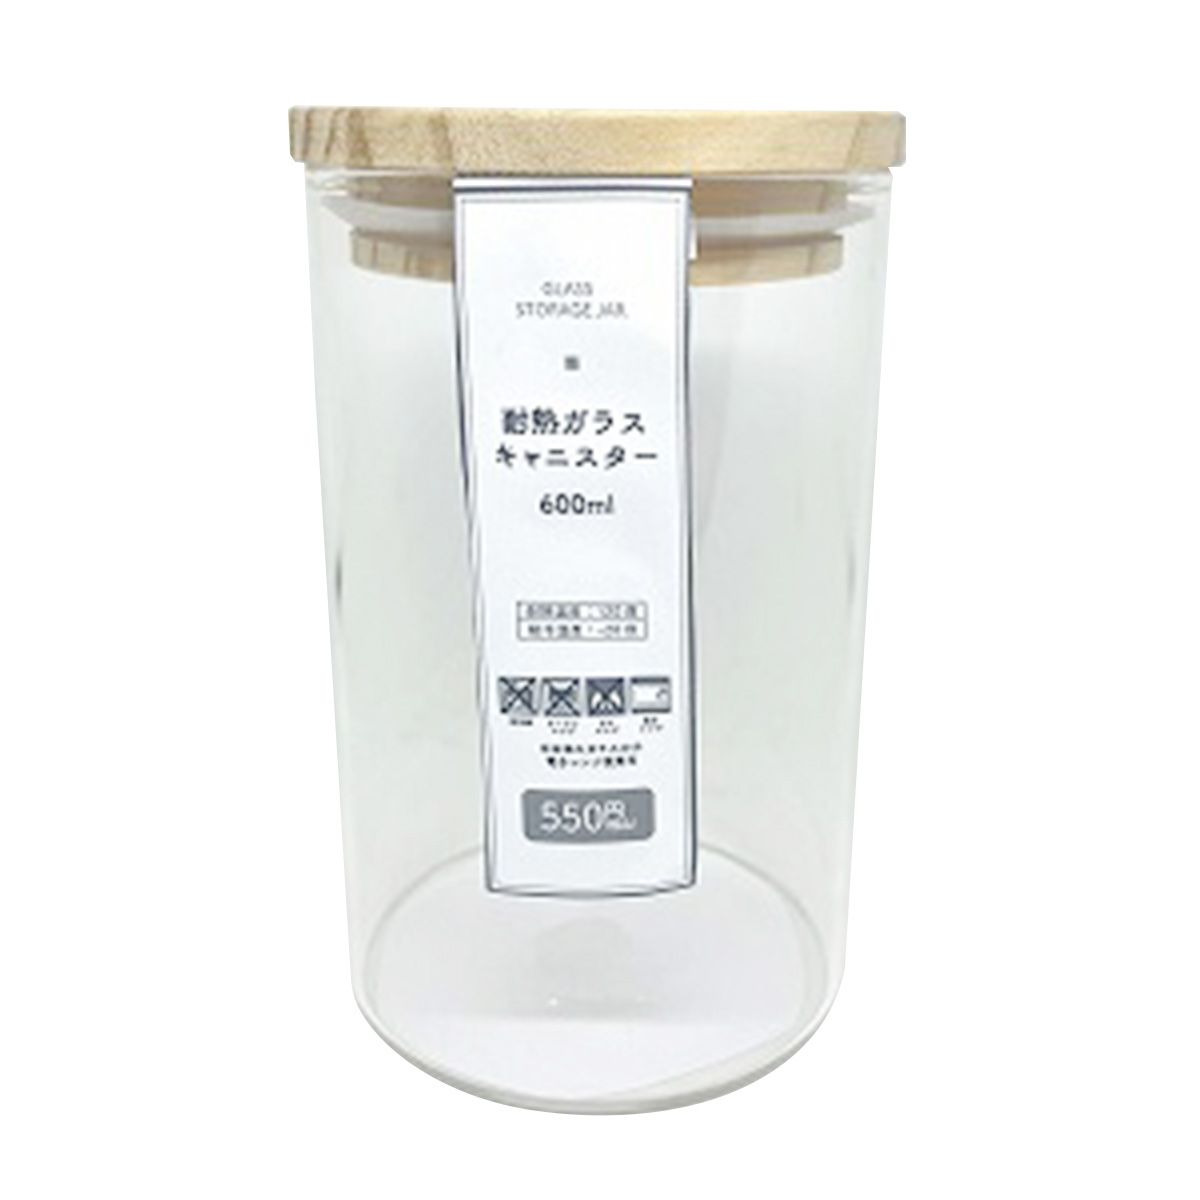 【在庫限り】ガラス瓶 キャニスター 食品保存容器 ストック容器 耐熱ガラス キャニスター 600ml 351010